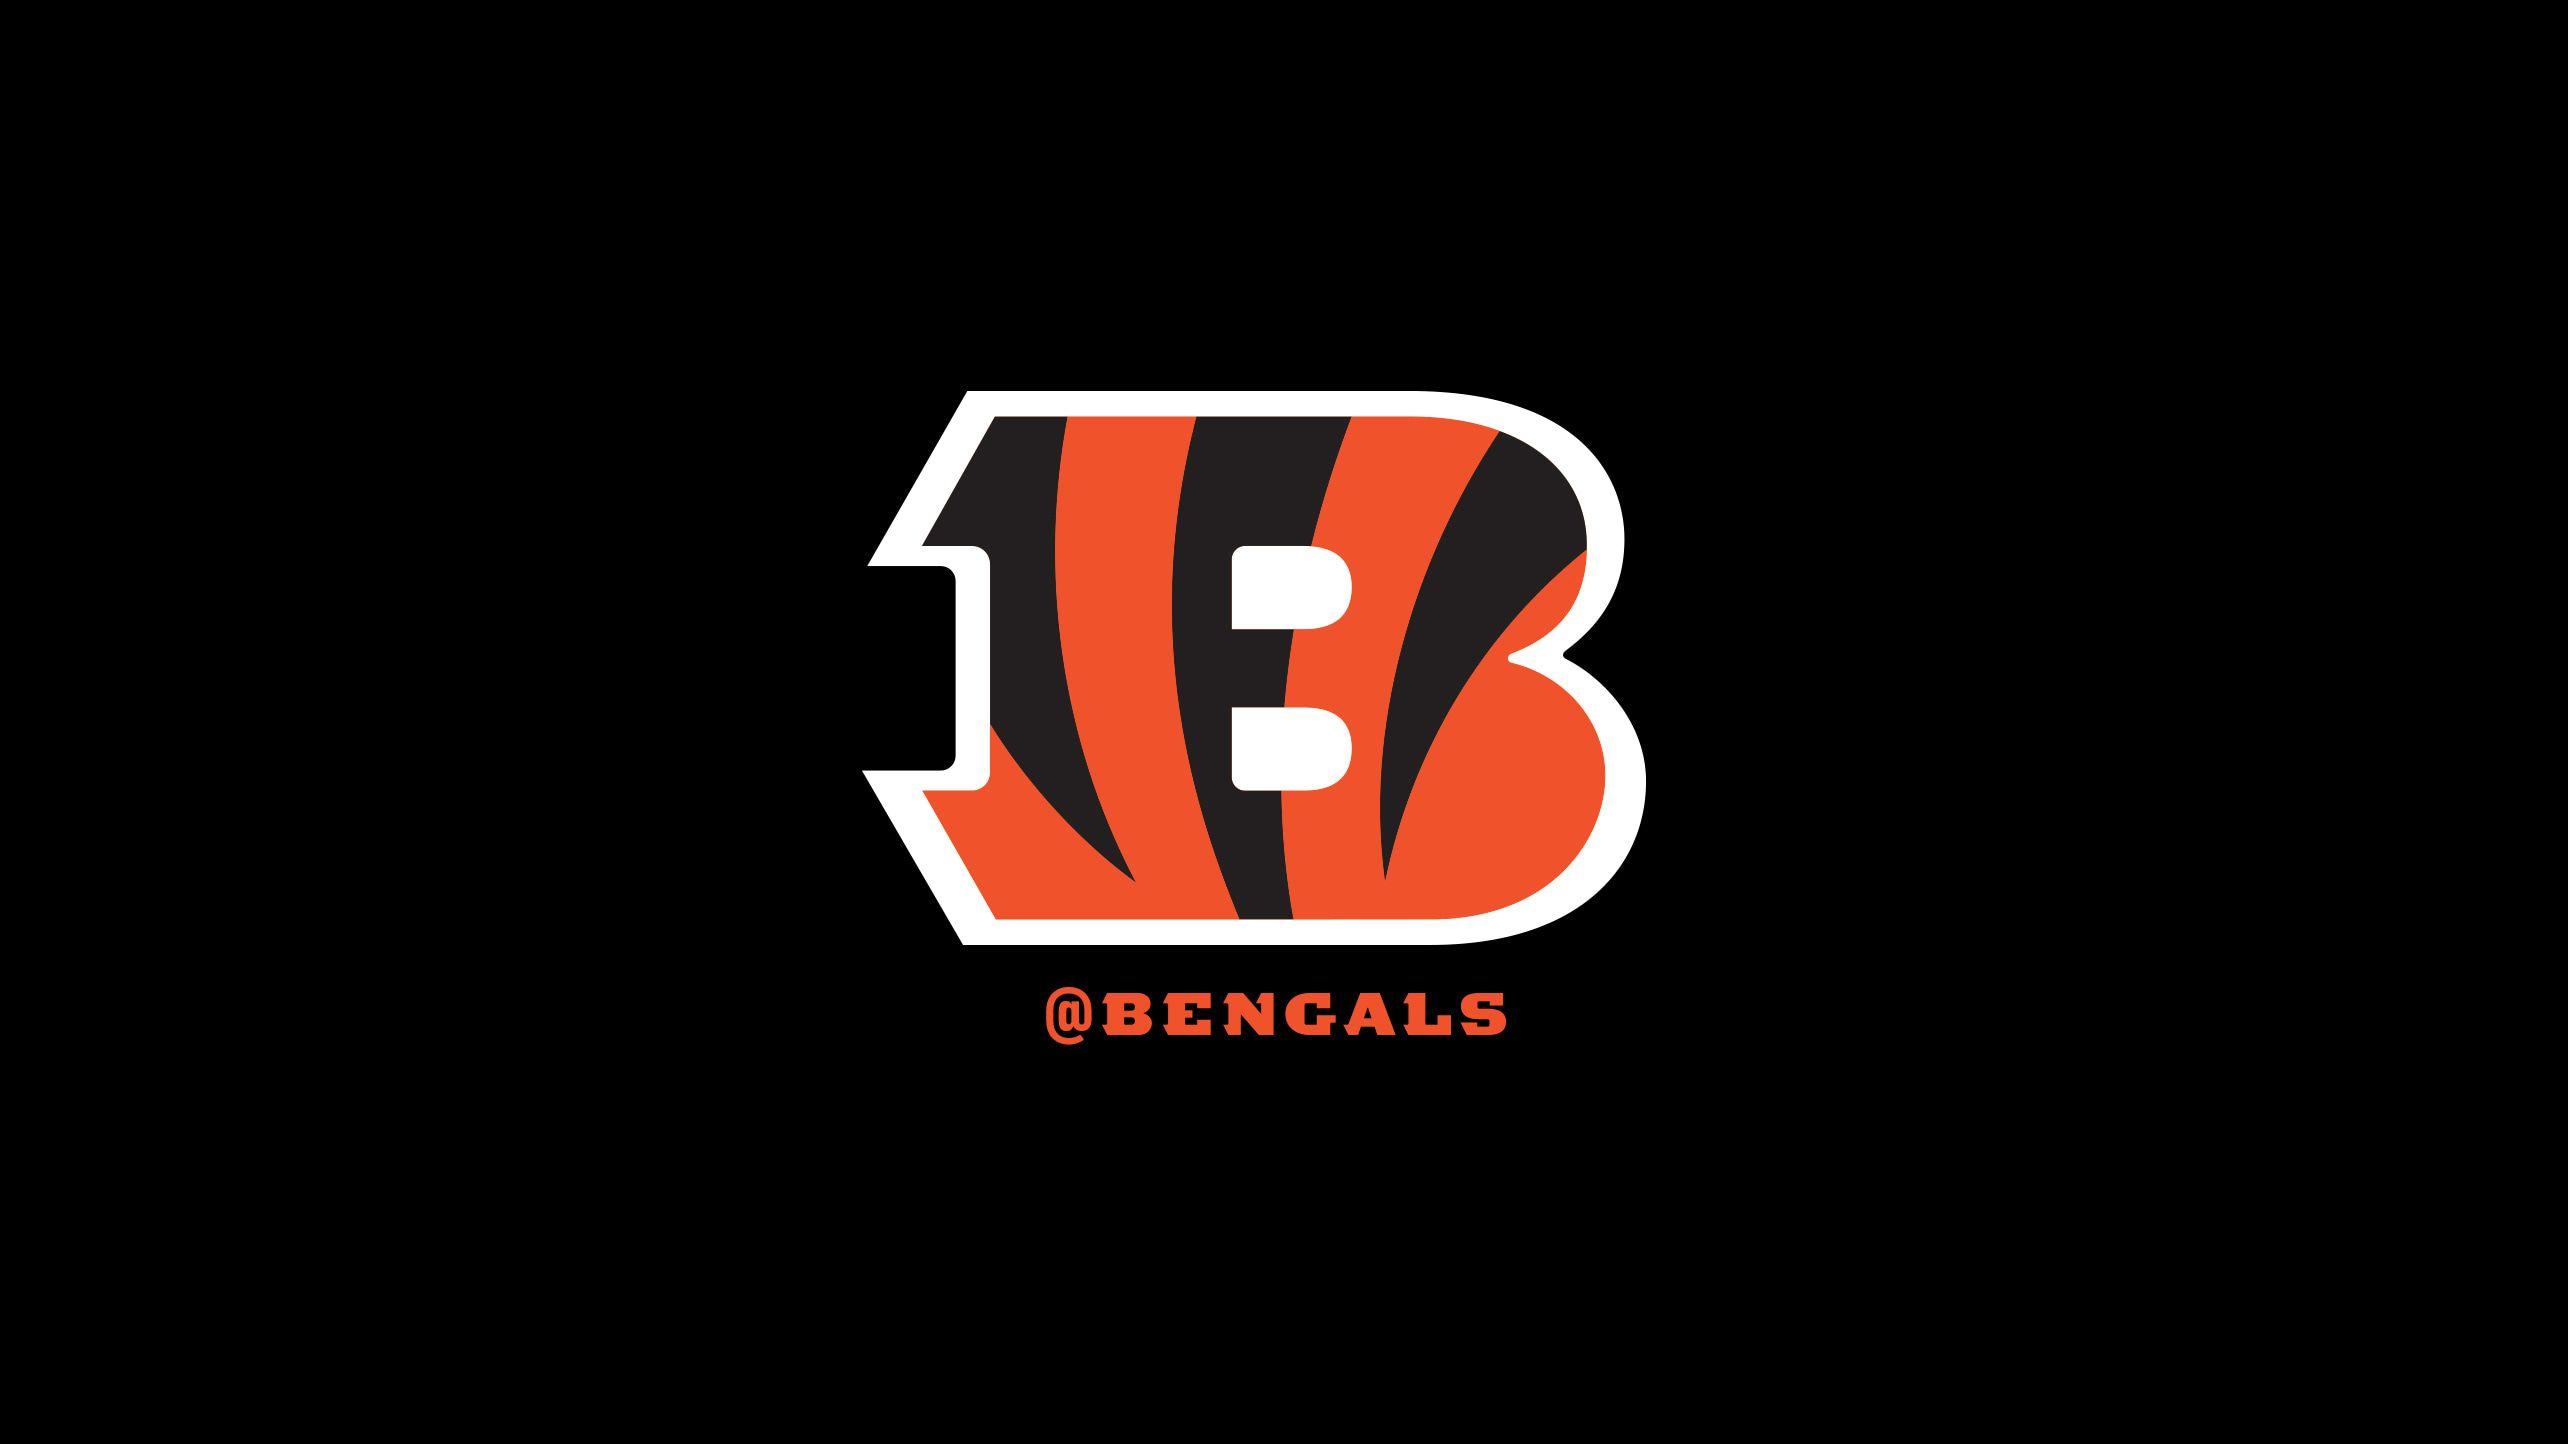 Bengals Logo - Cincinnati Bengals Fans | 2018 Wallpaper - Bengals.com